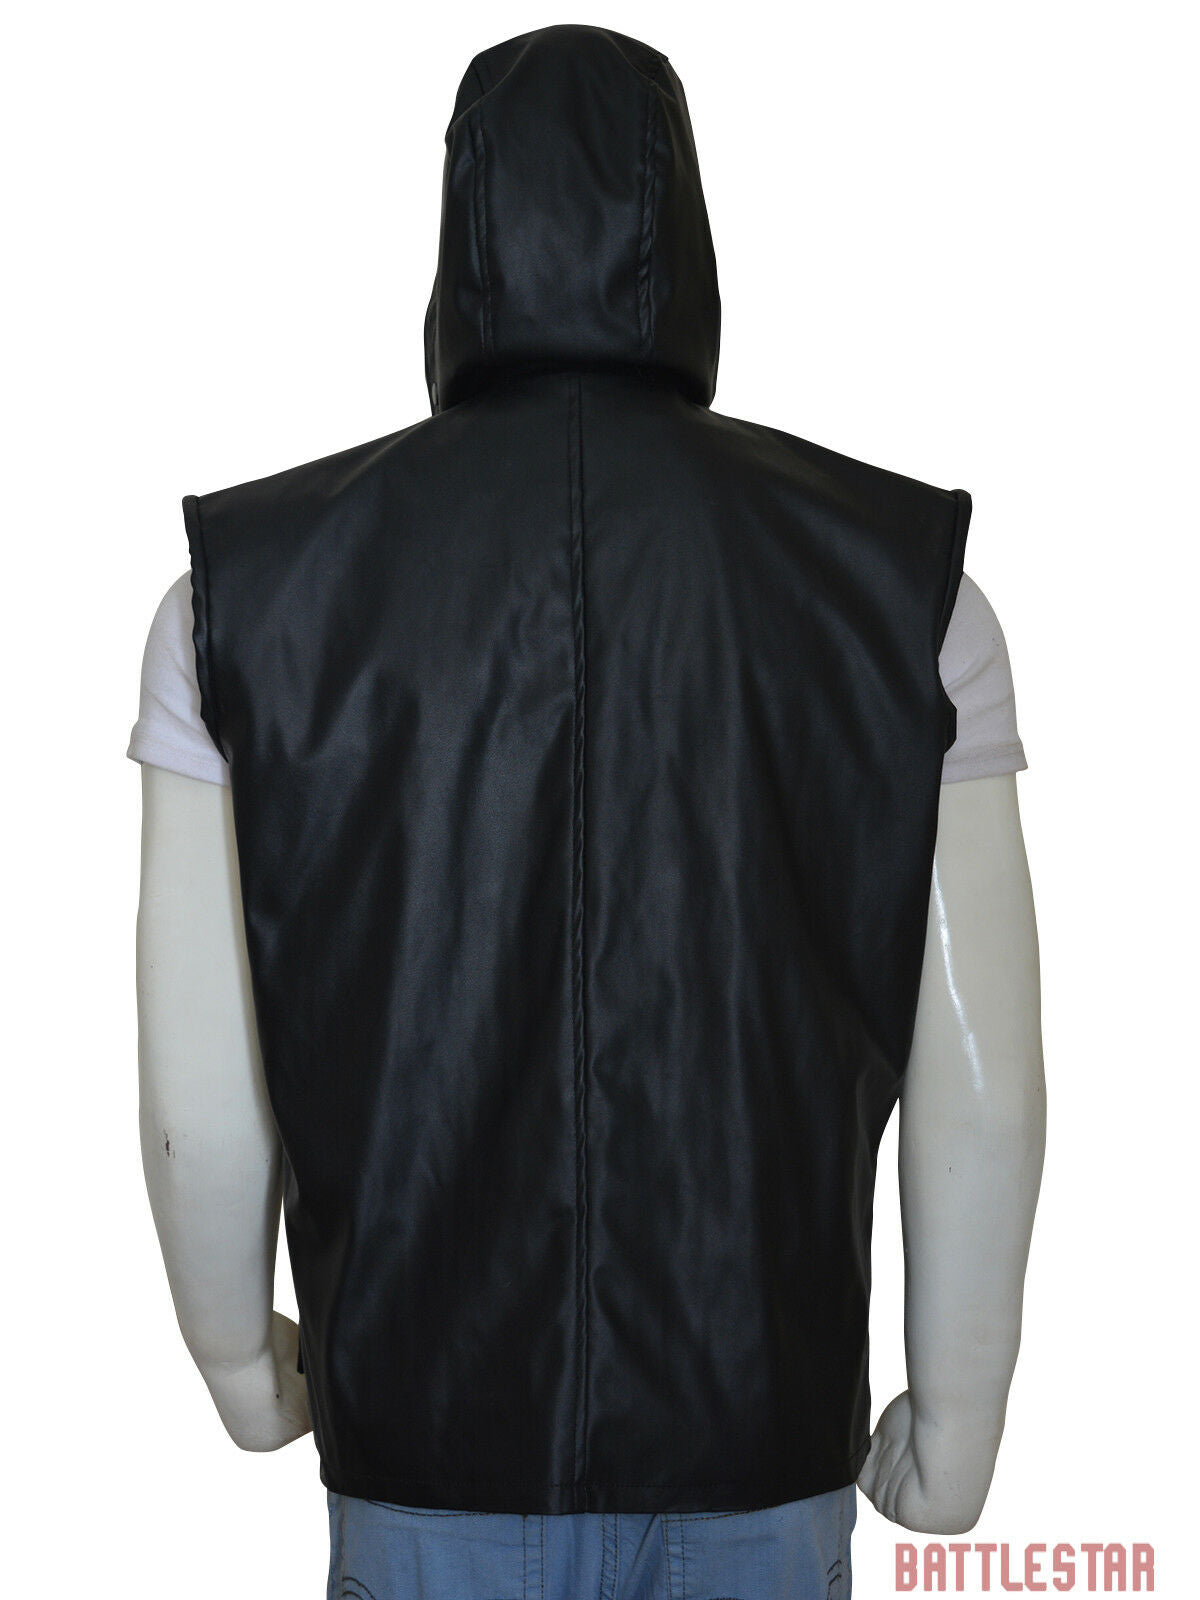 Spine Spark Johnny Cage Mortal Combat Black Leather Vest Hoodie